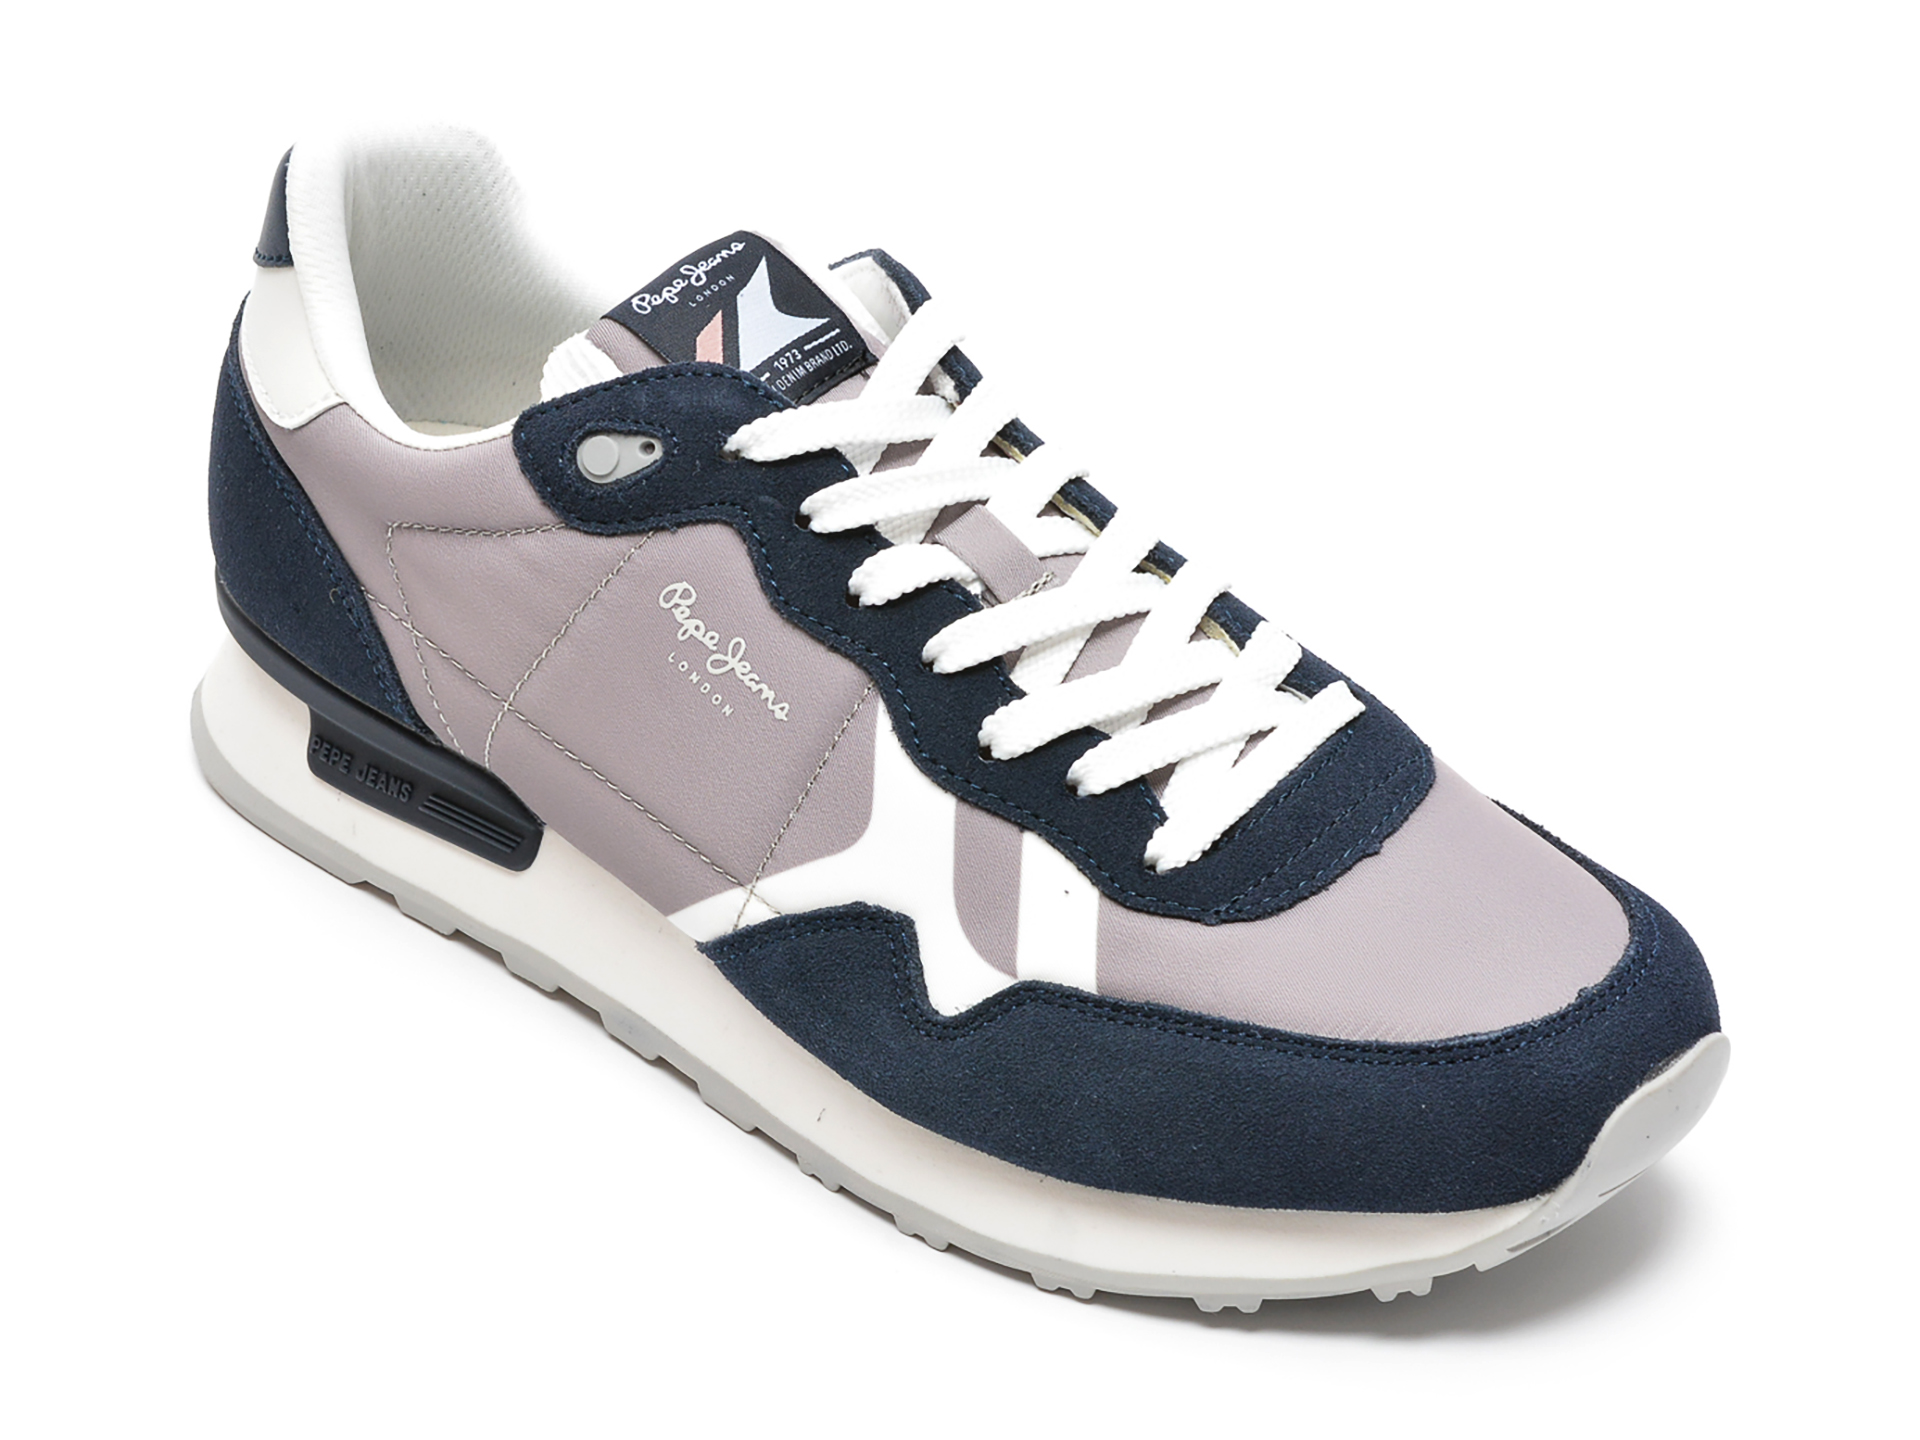 Pantofi sport GRYXX maro, 21729, din material textil si piele naturala Gryxx